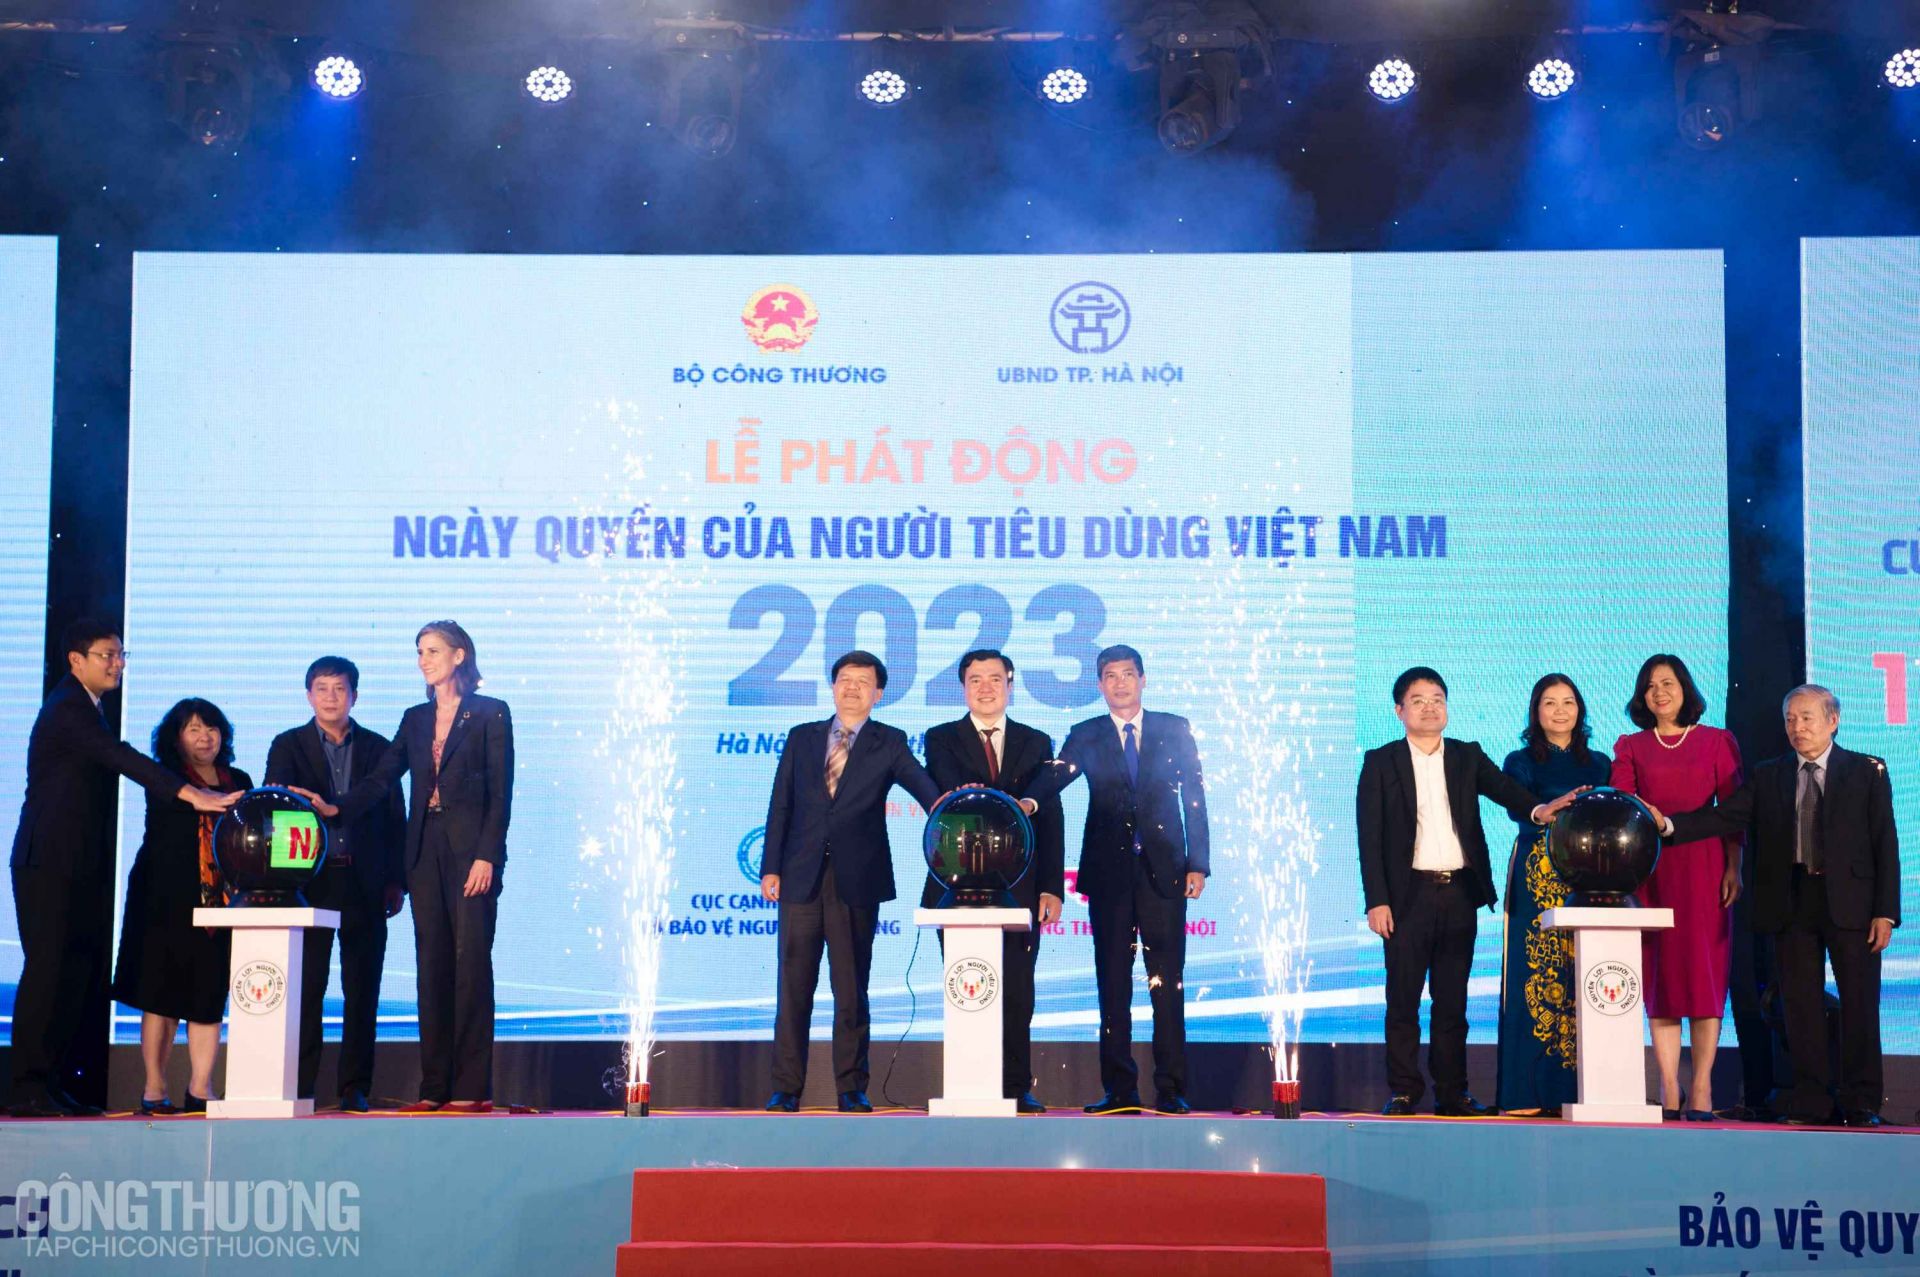 Các đại biểu nhấn nút phát động Ngày Quyền của người tiêu dùng Việt Nam năm 2023